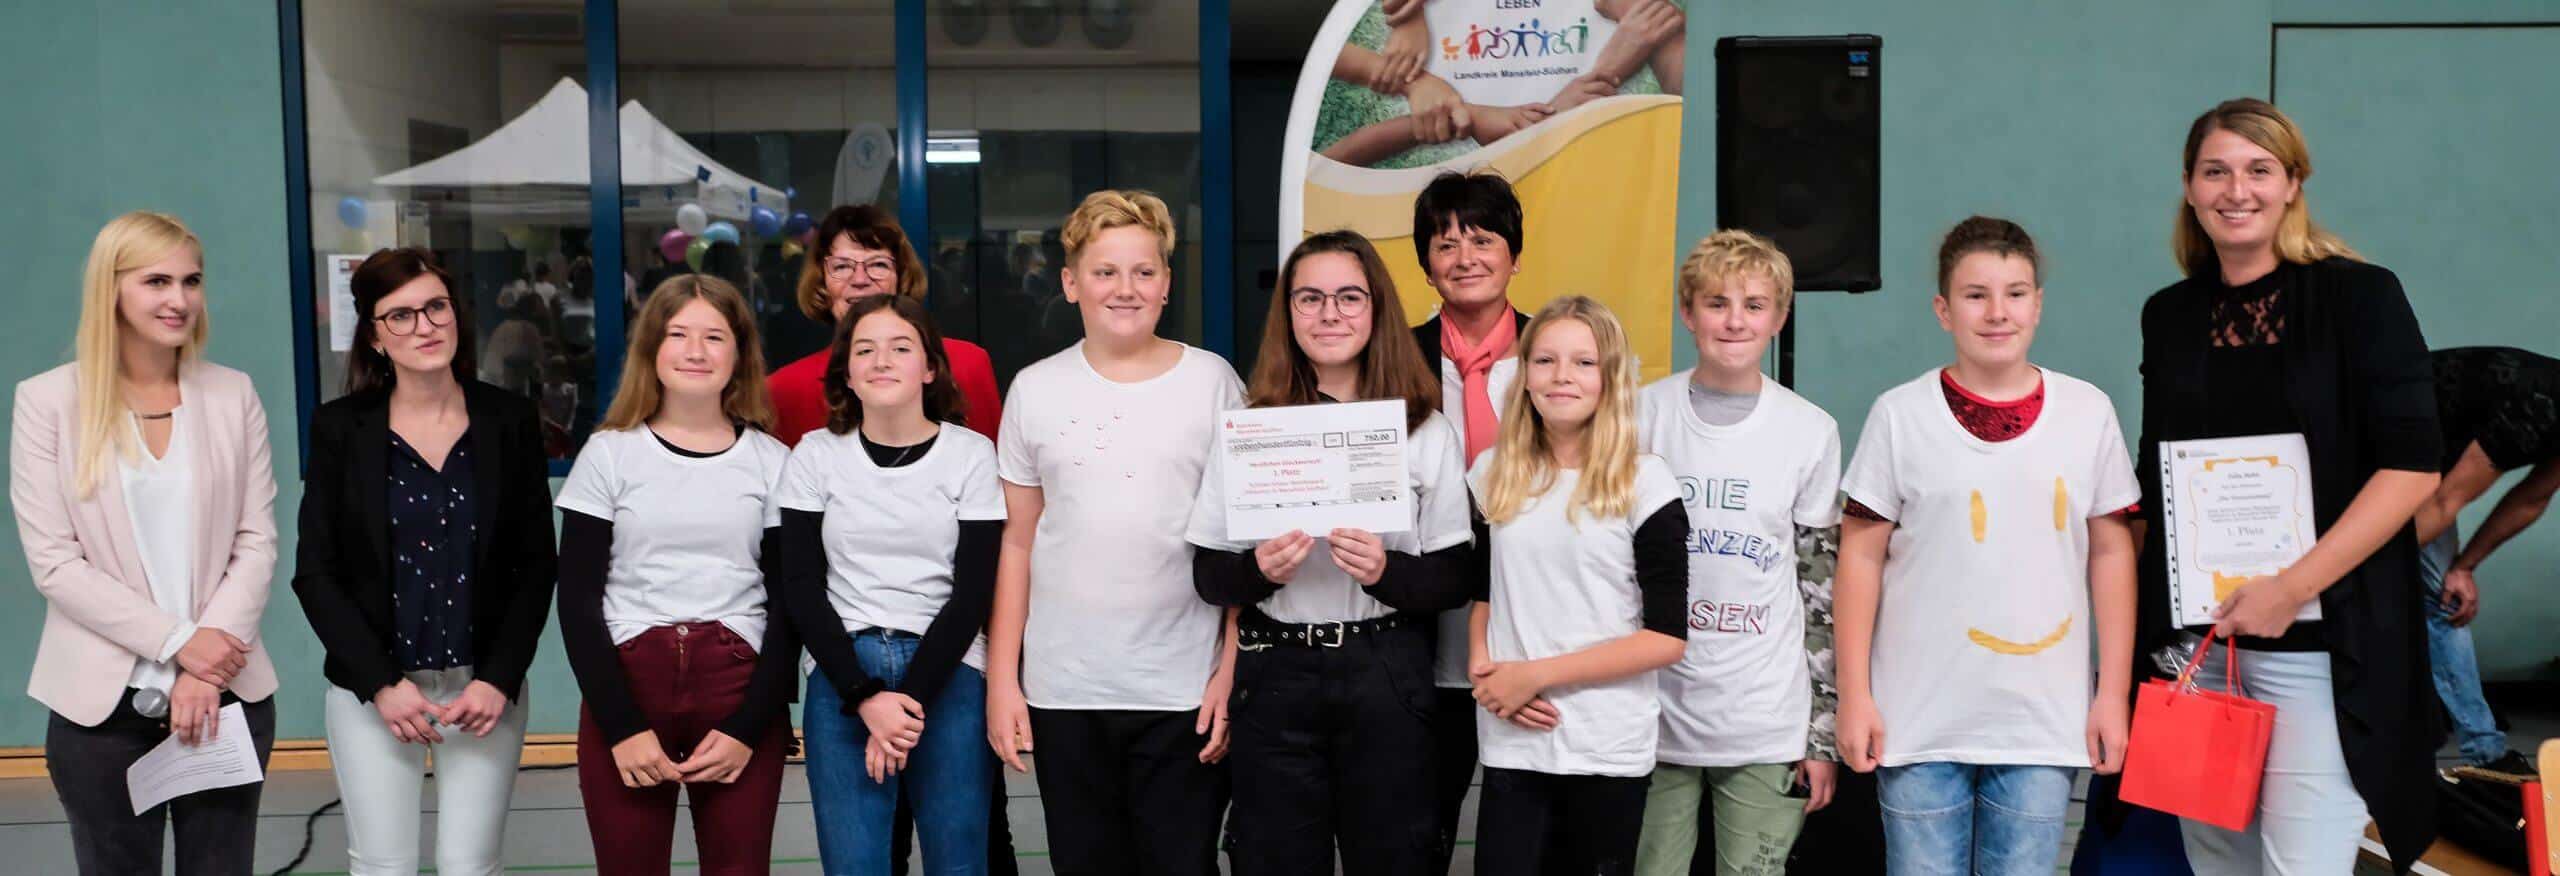 Das Projektteam vom Geschwister-Scholl-Gymnasium Sangerhausen hat den ersten Platz beim Schülervideowettbewerb belegt.